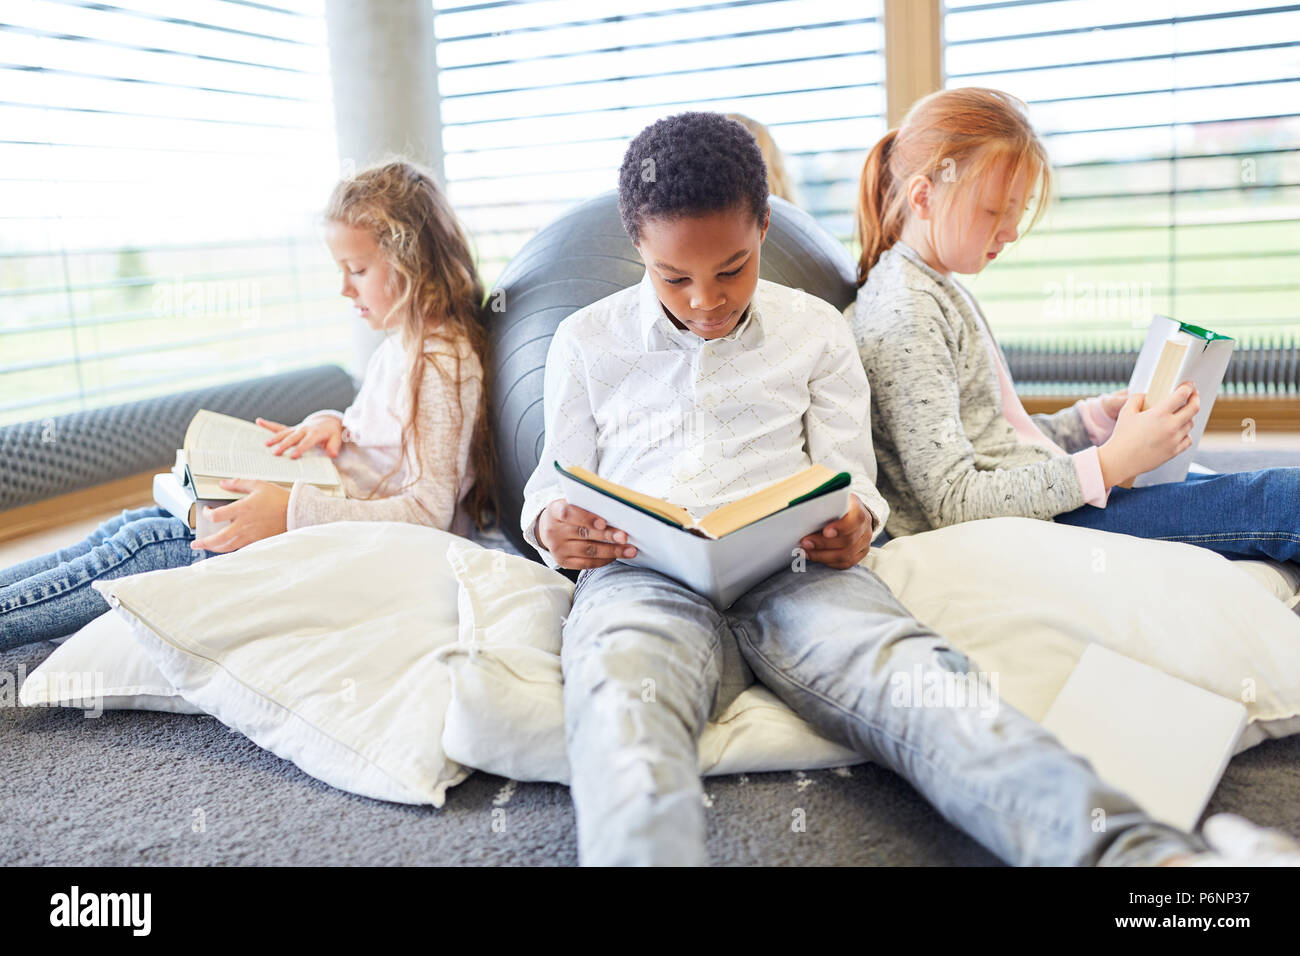 Gruppe von Kindern zusammen, lesen Sie Bücher in einer Grundschule Lesesaal Stockfoto